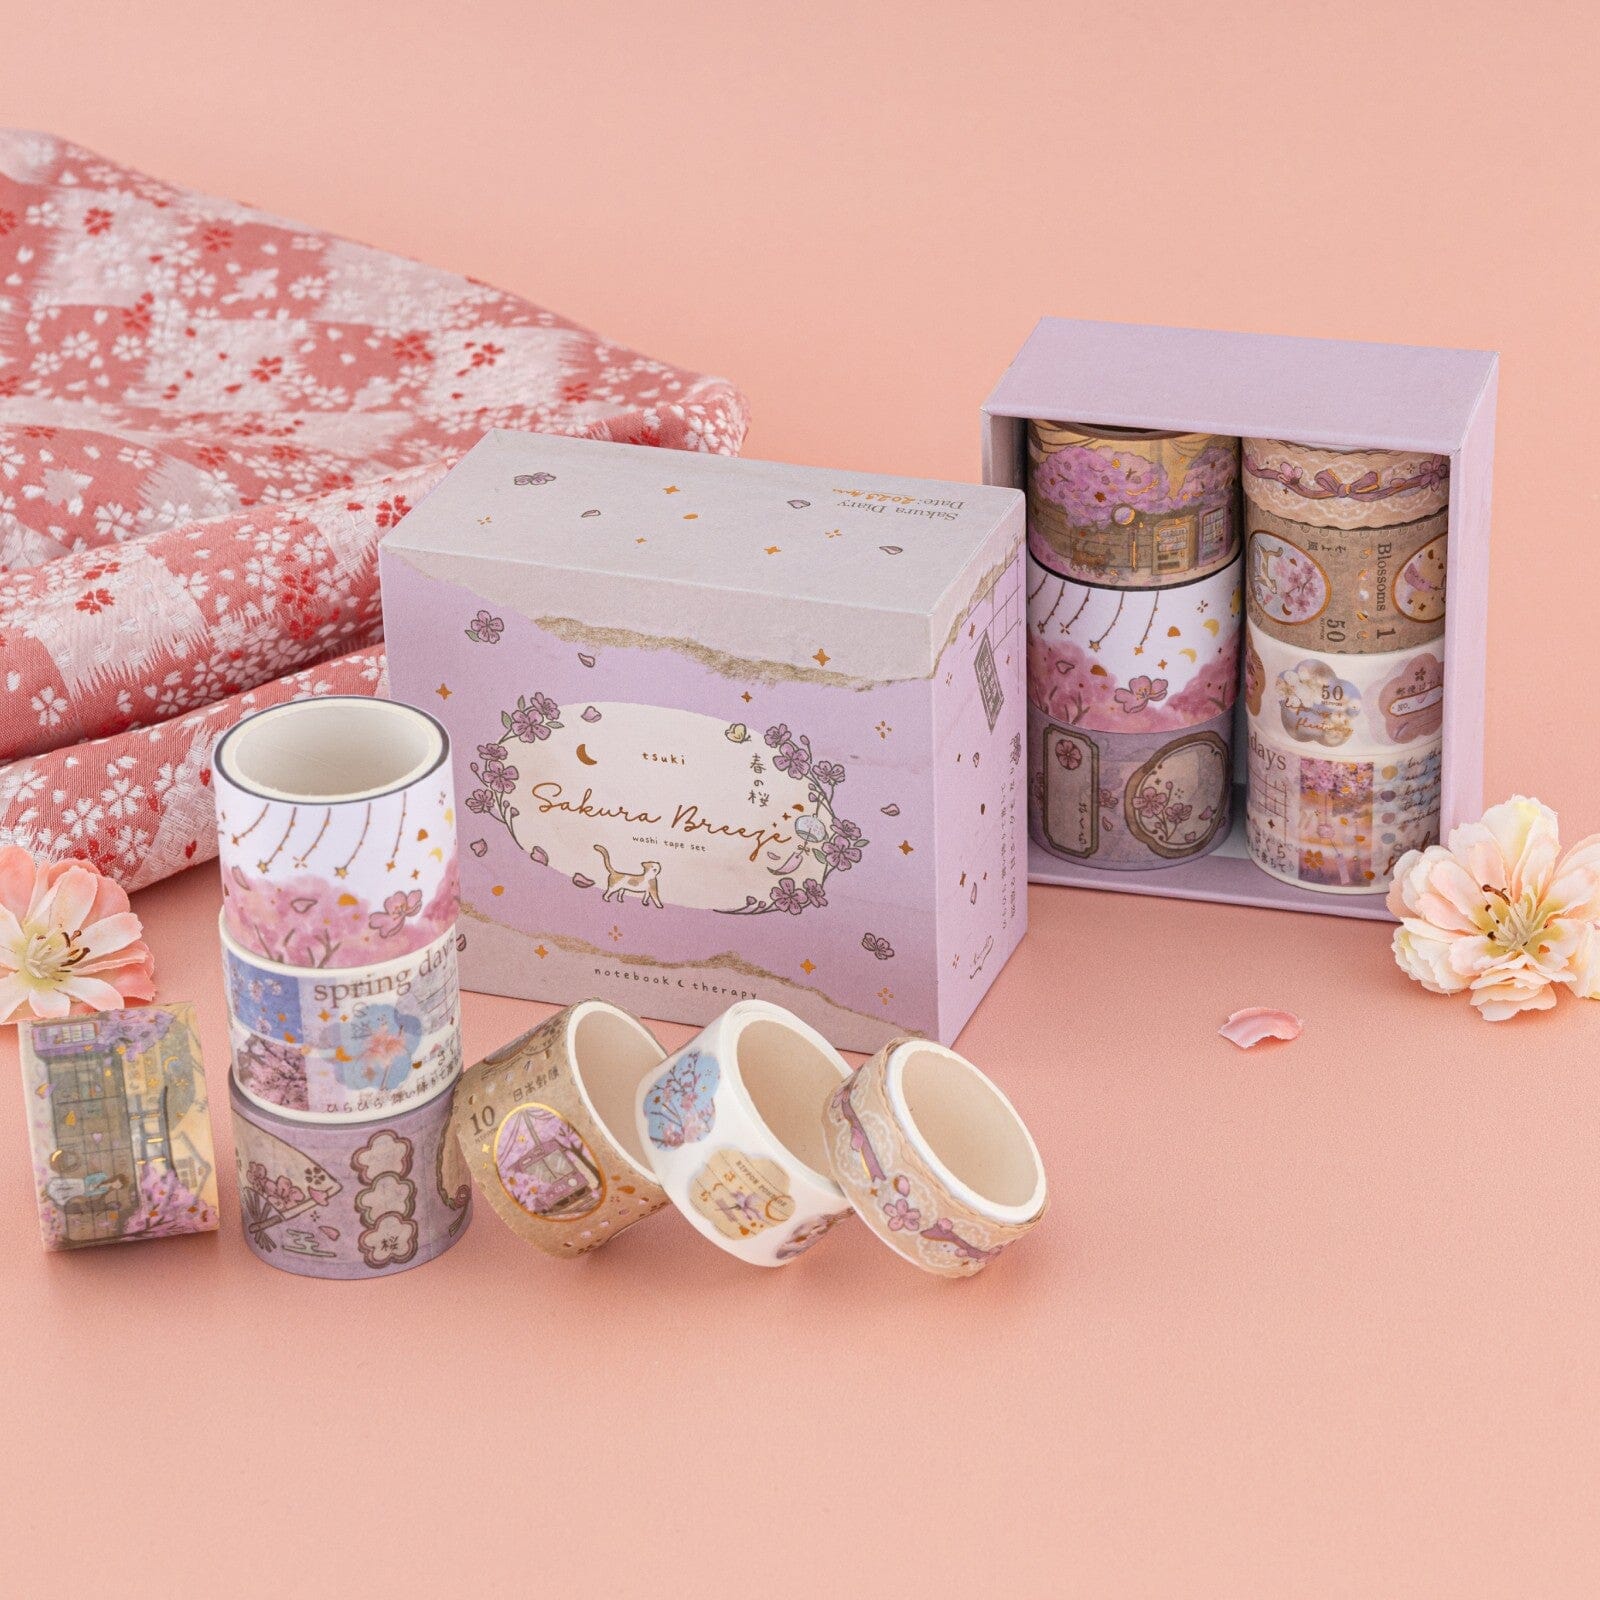 Box of sakura breeze washi tape set on pink table